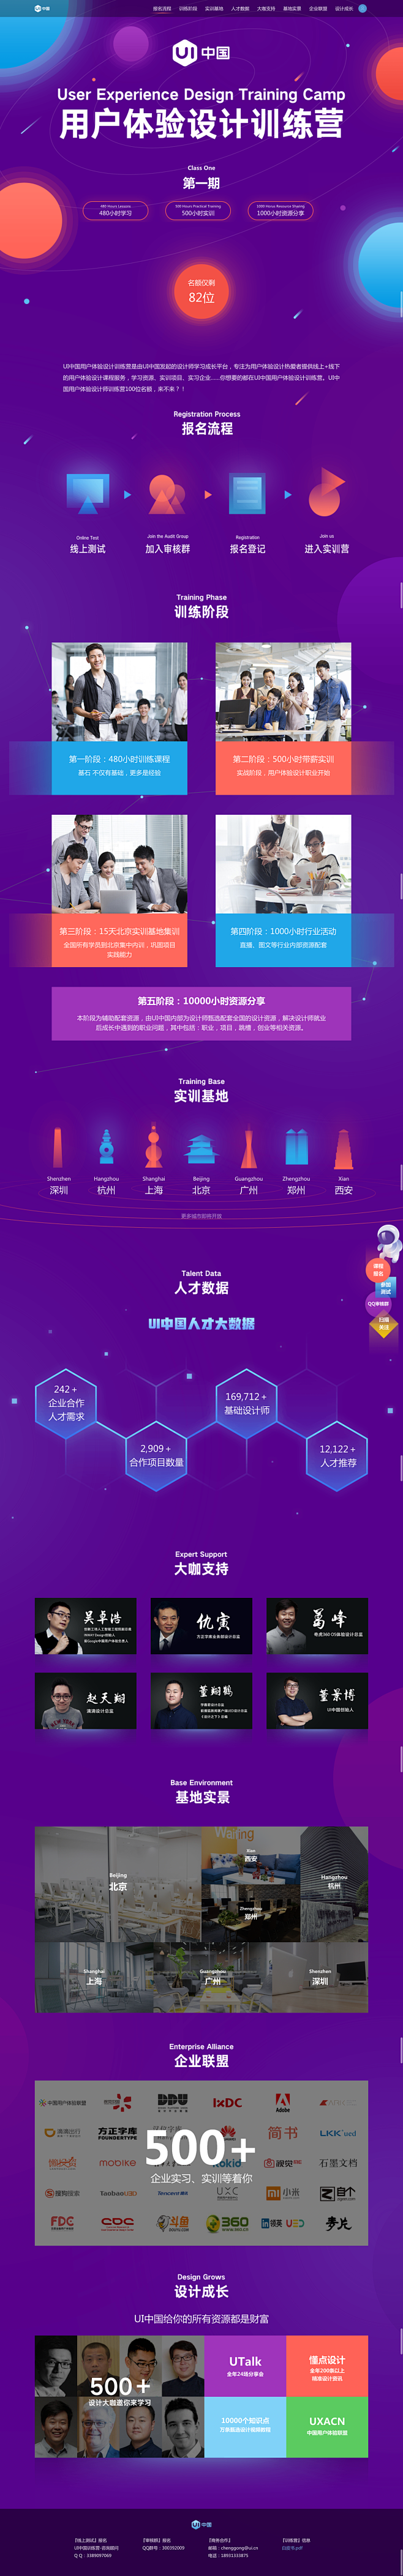 UI中国用户体验设计训练营